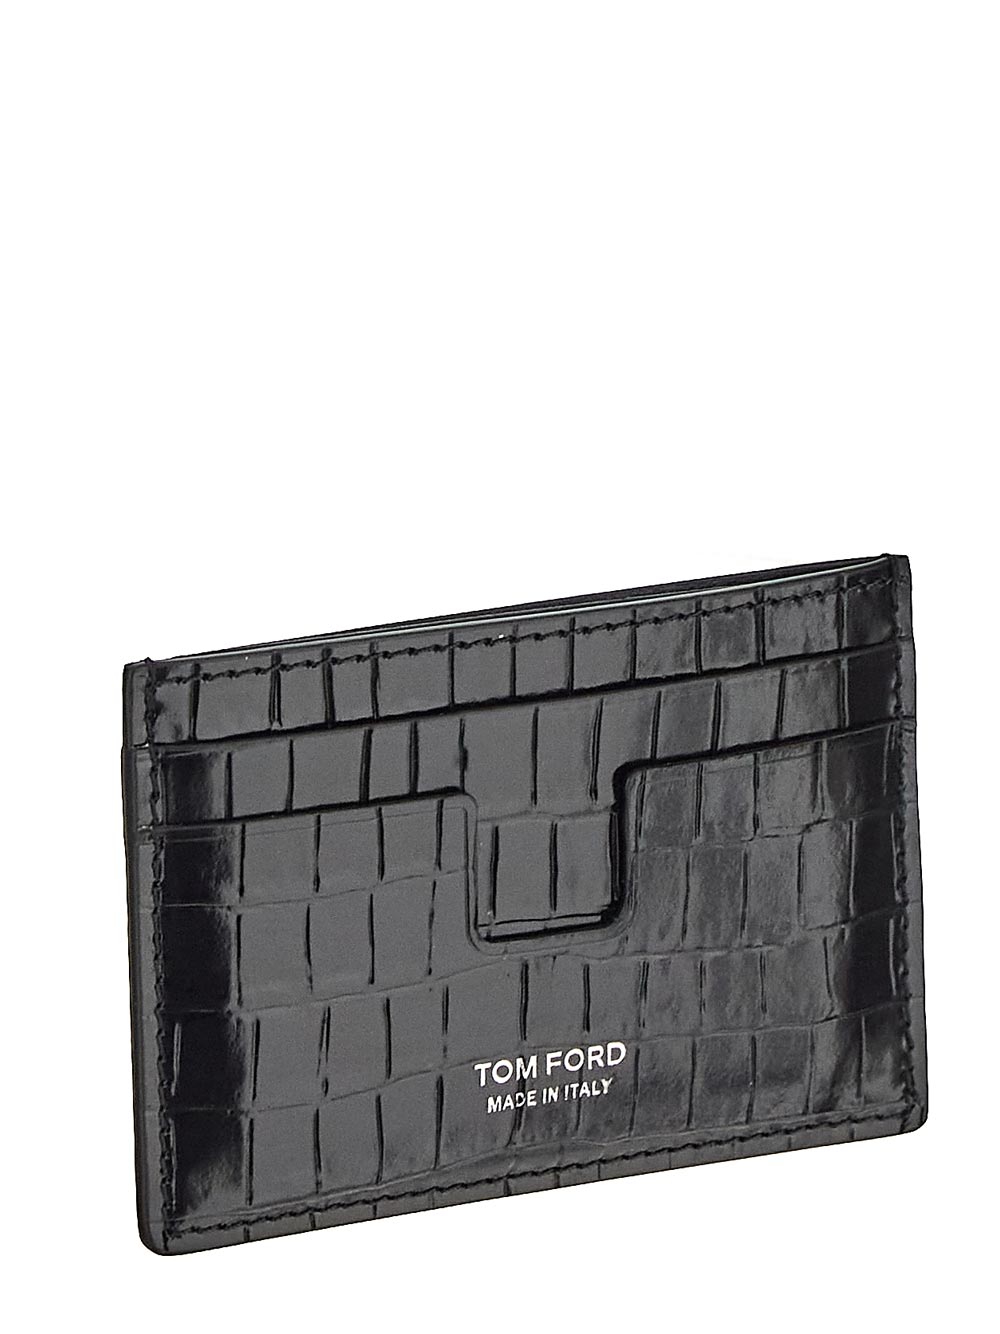 Tom Ford Printed Croc Cardholder